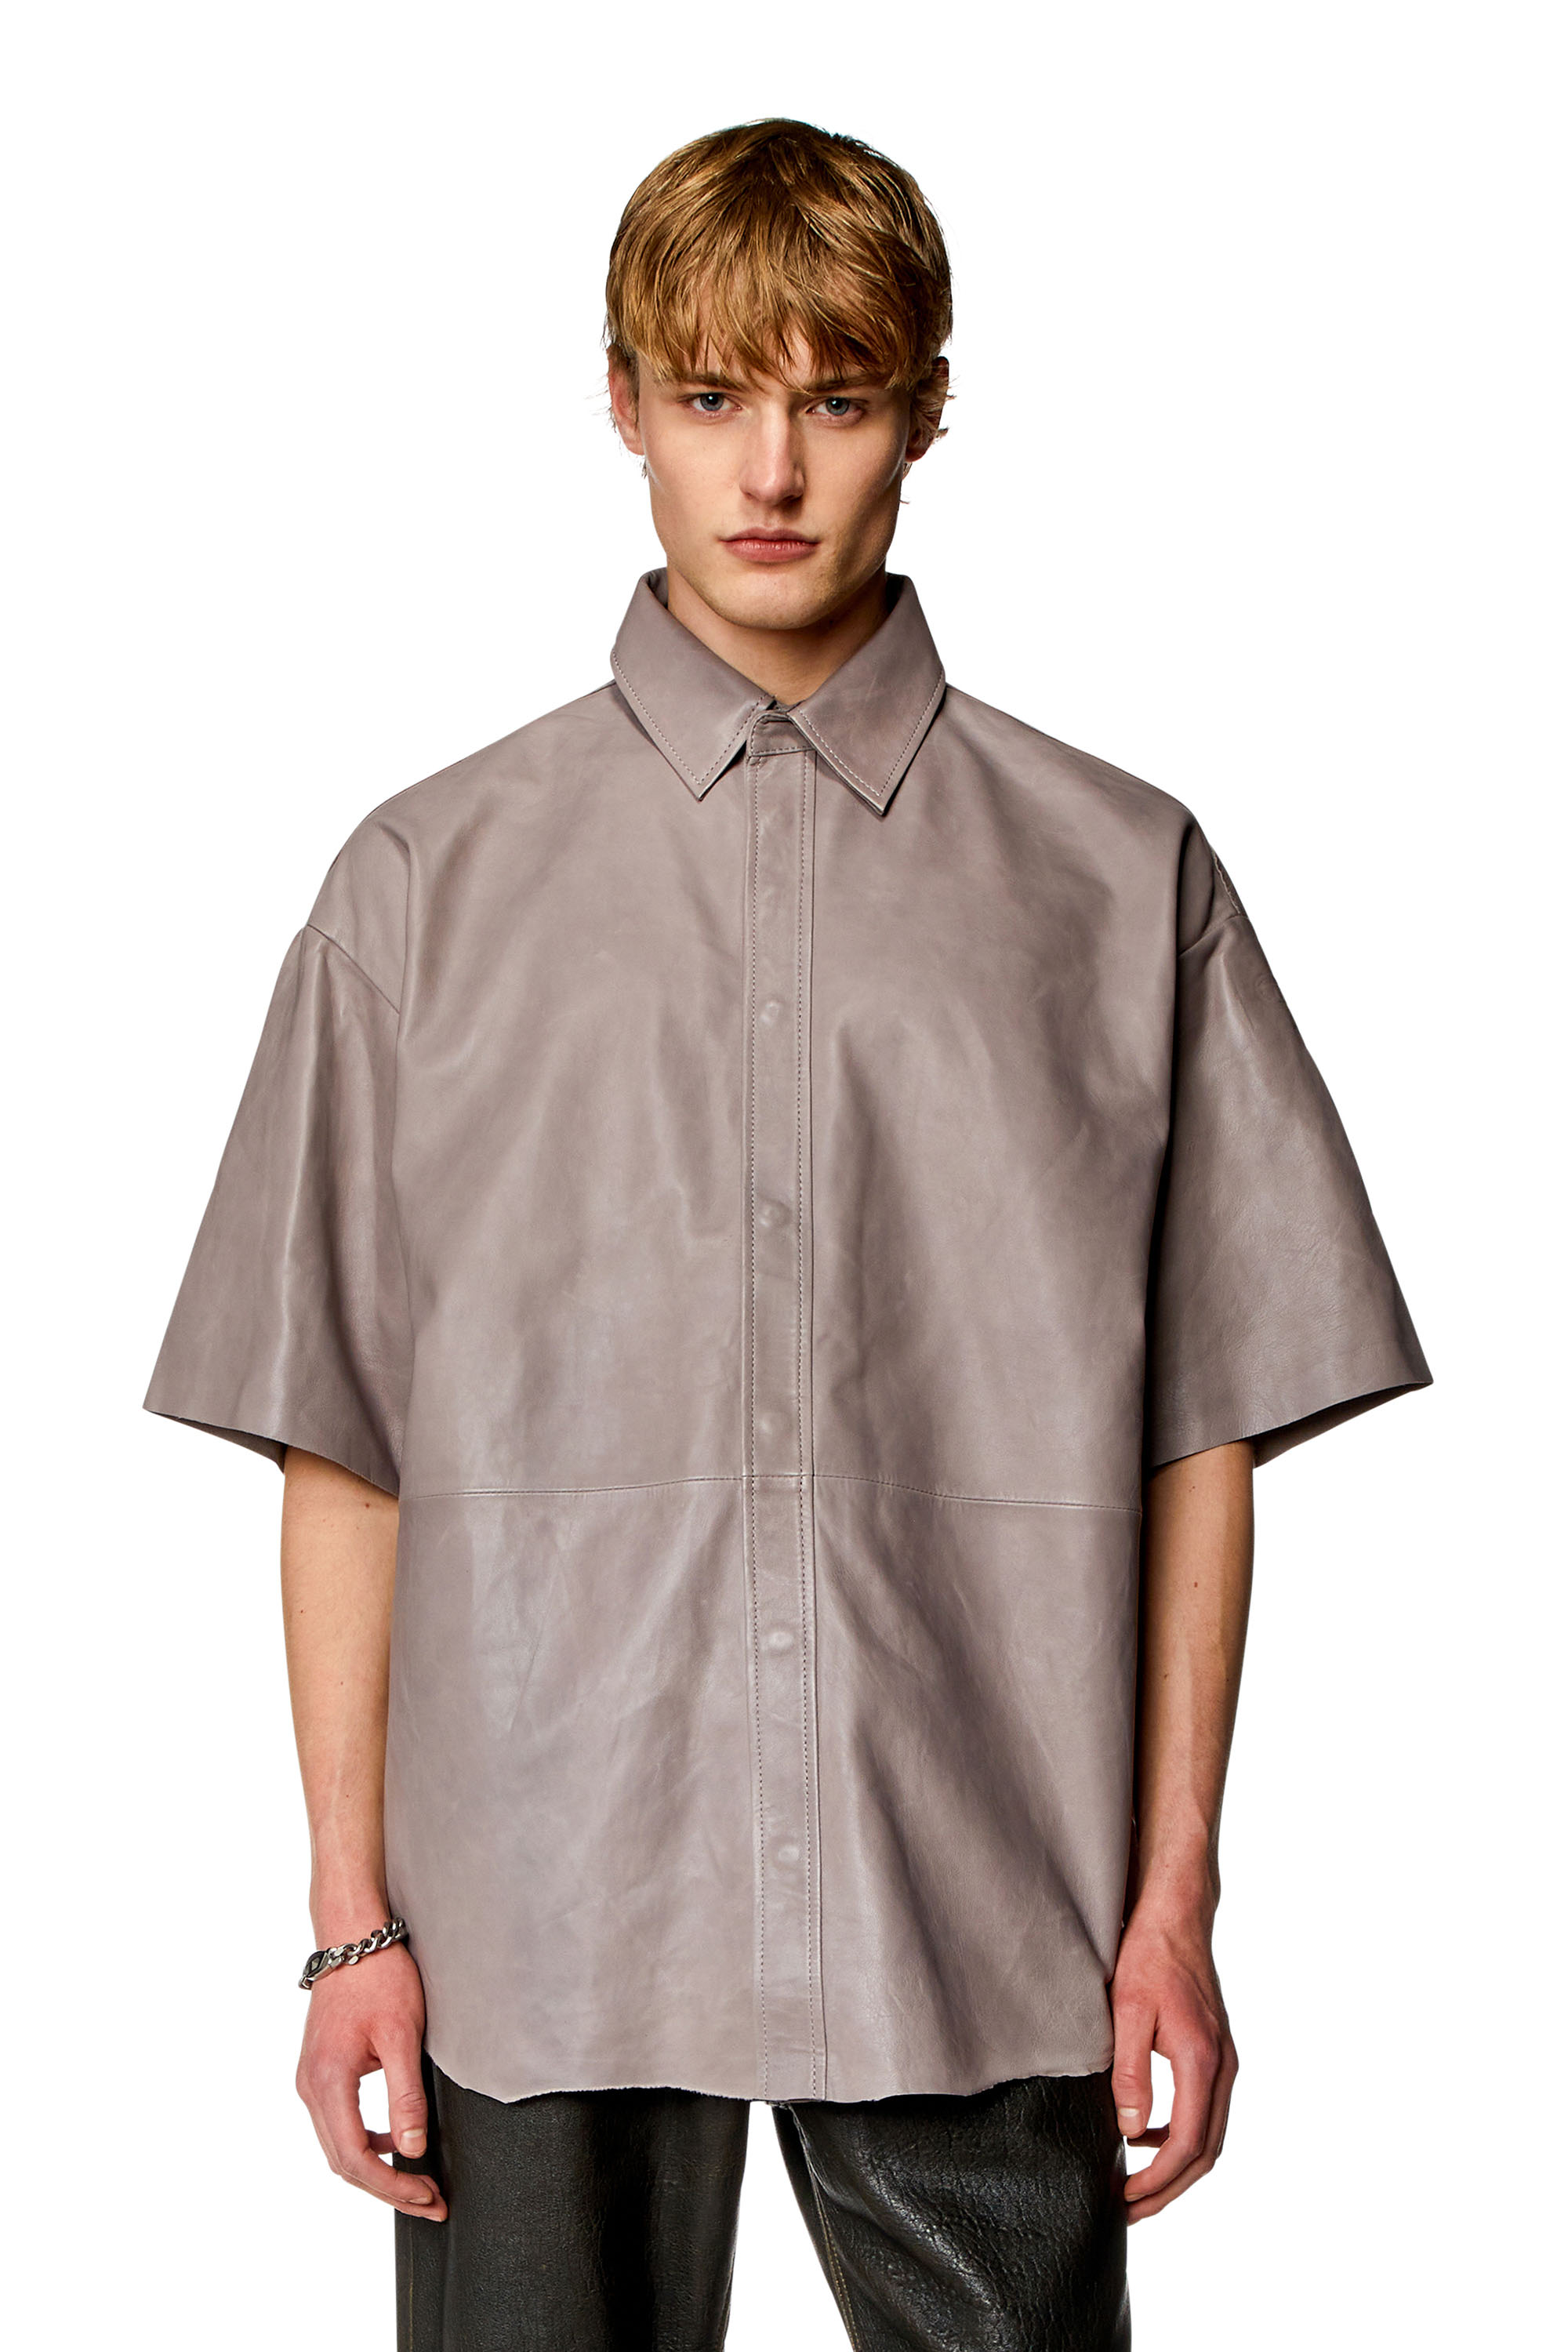 Diesel - Oversize-Shirt aus behandeltem Leder - Hemden - Herren - Grau